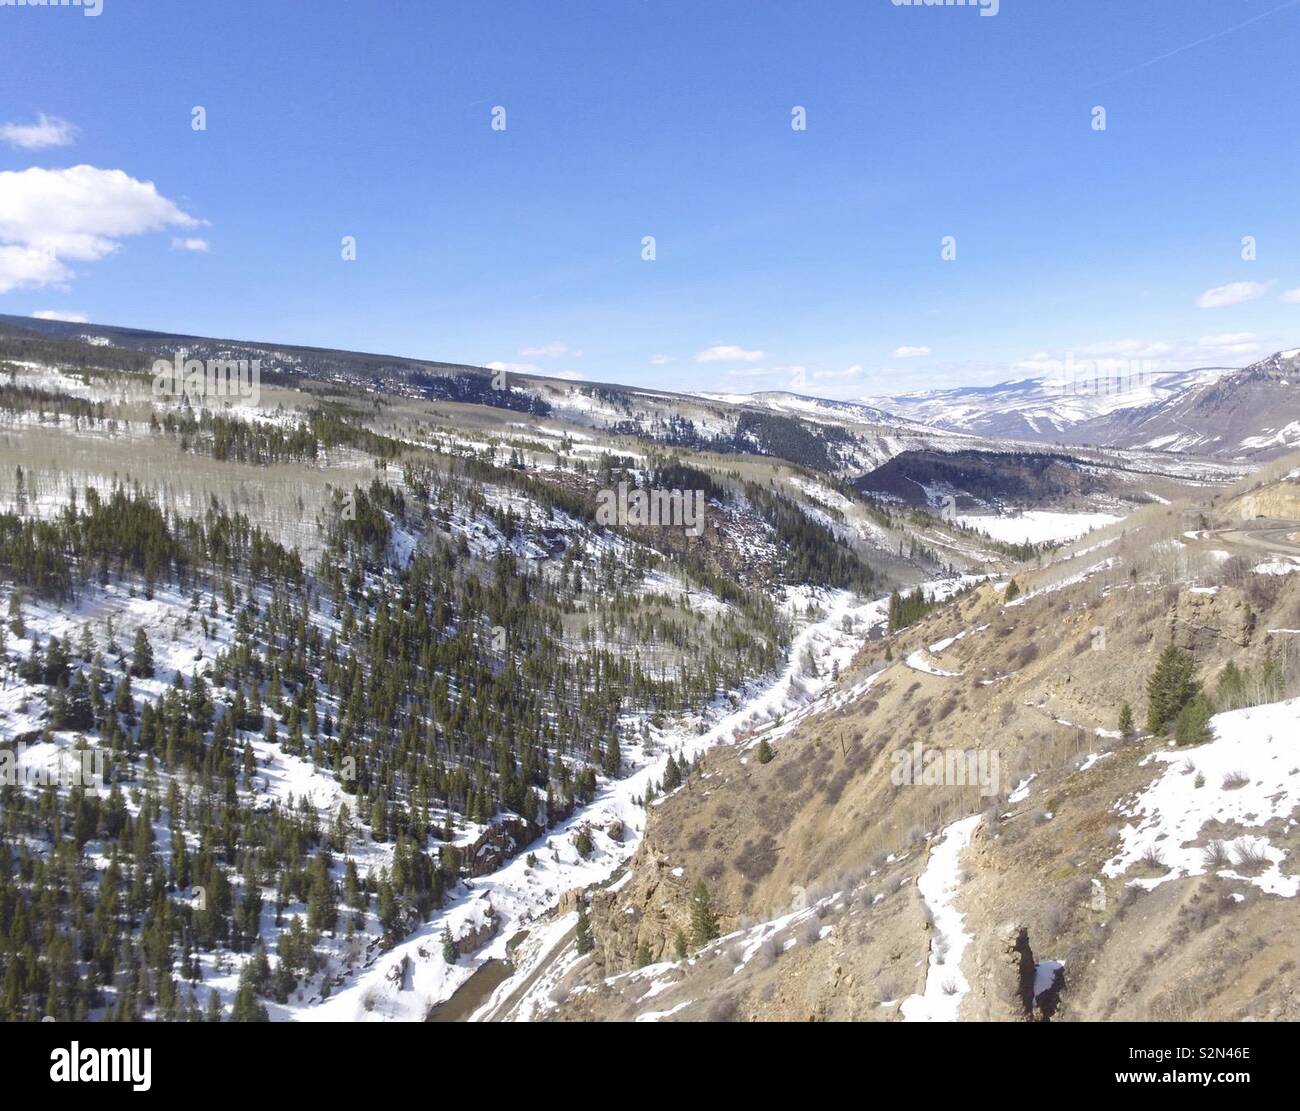 Eine schöne drone Bild von einem Tal in den Rocky Mountains. Stockfoto